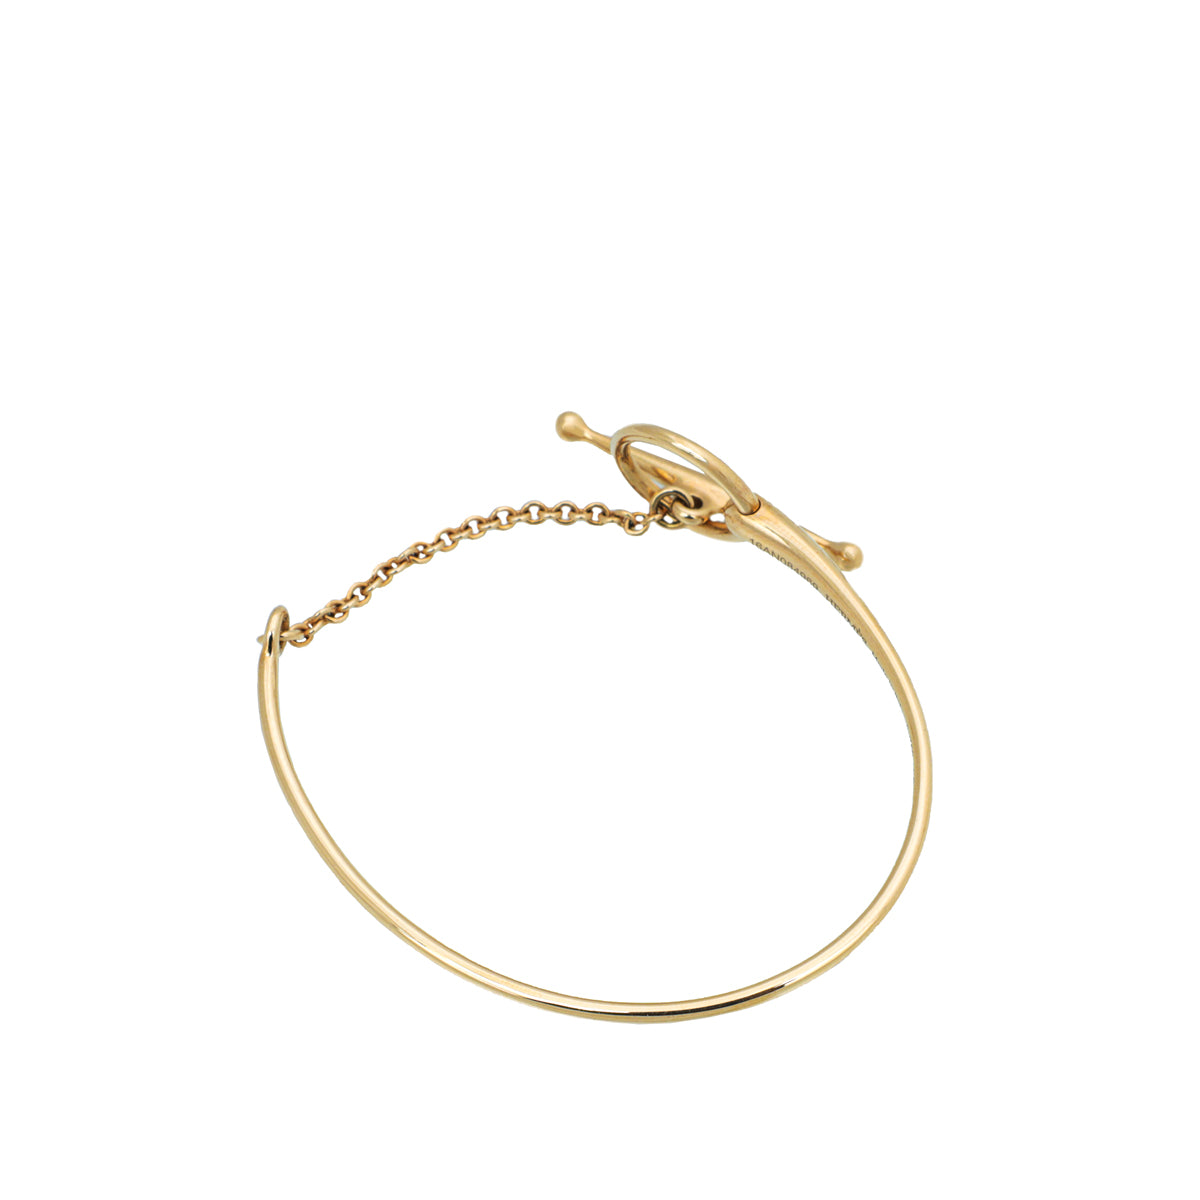 Hermes 18K Rose Gold Filet d'Or Bracelet